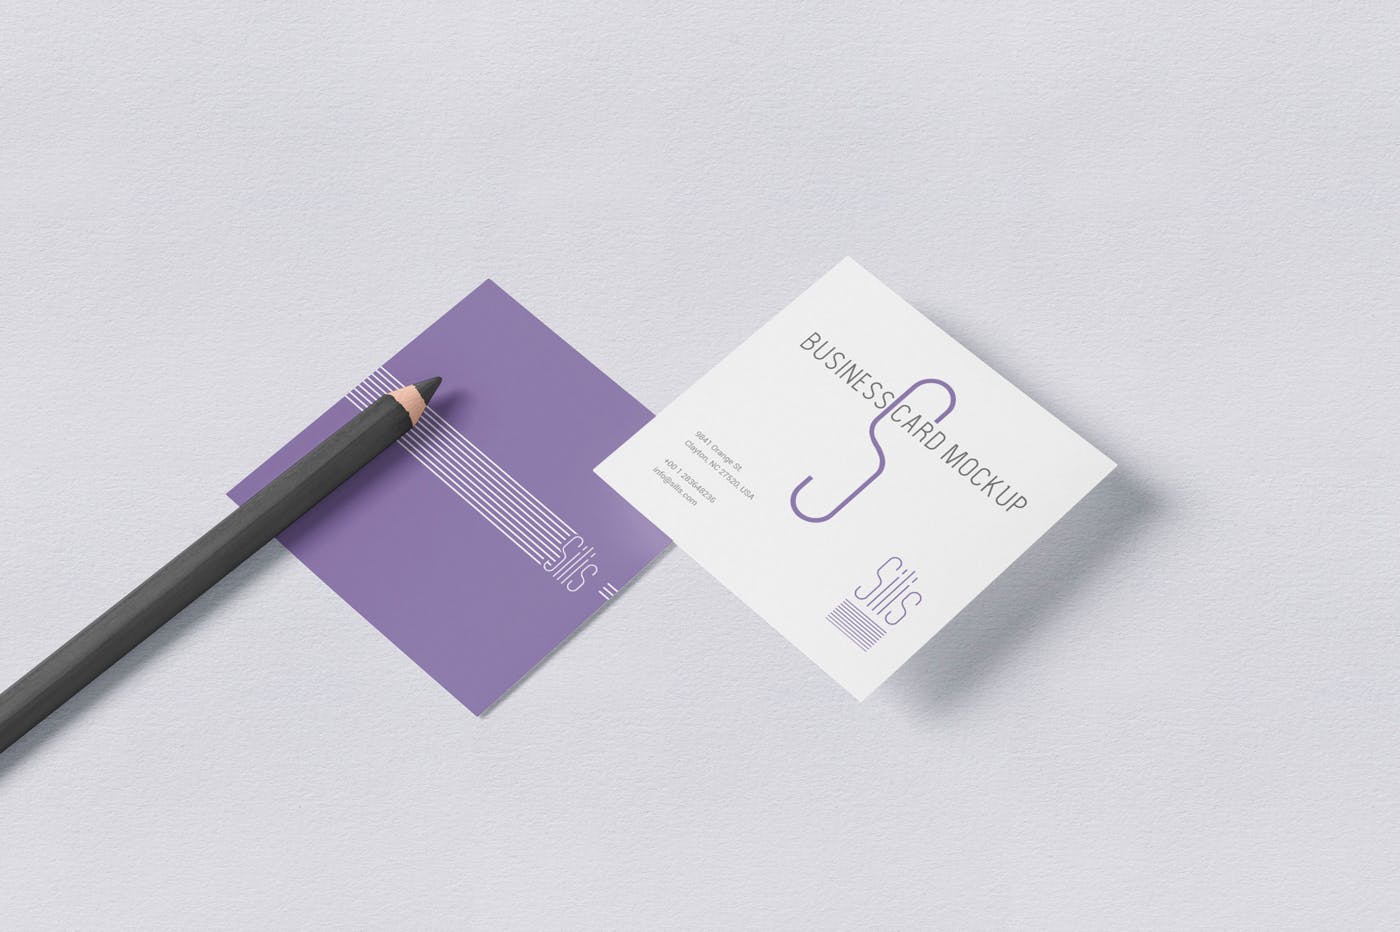 方形名片叠放阴影效果样机蚂蚁素材精选模板 Square Shaped Business Card Mockups插图(1)